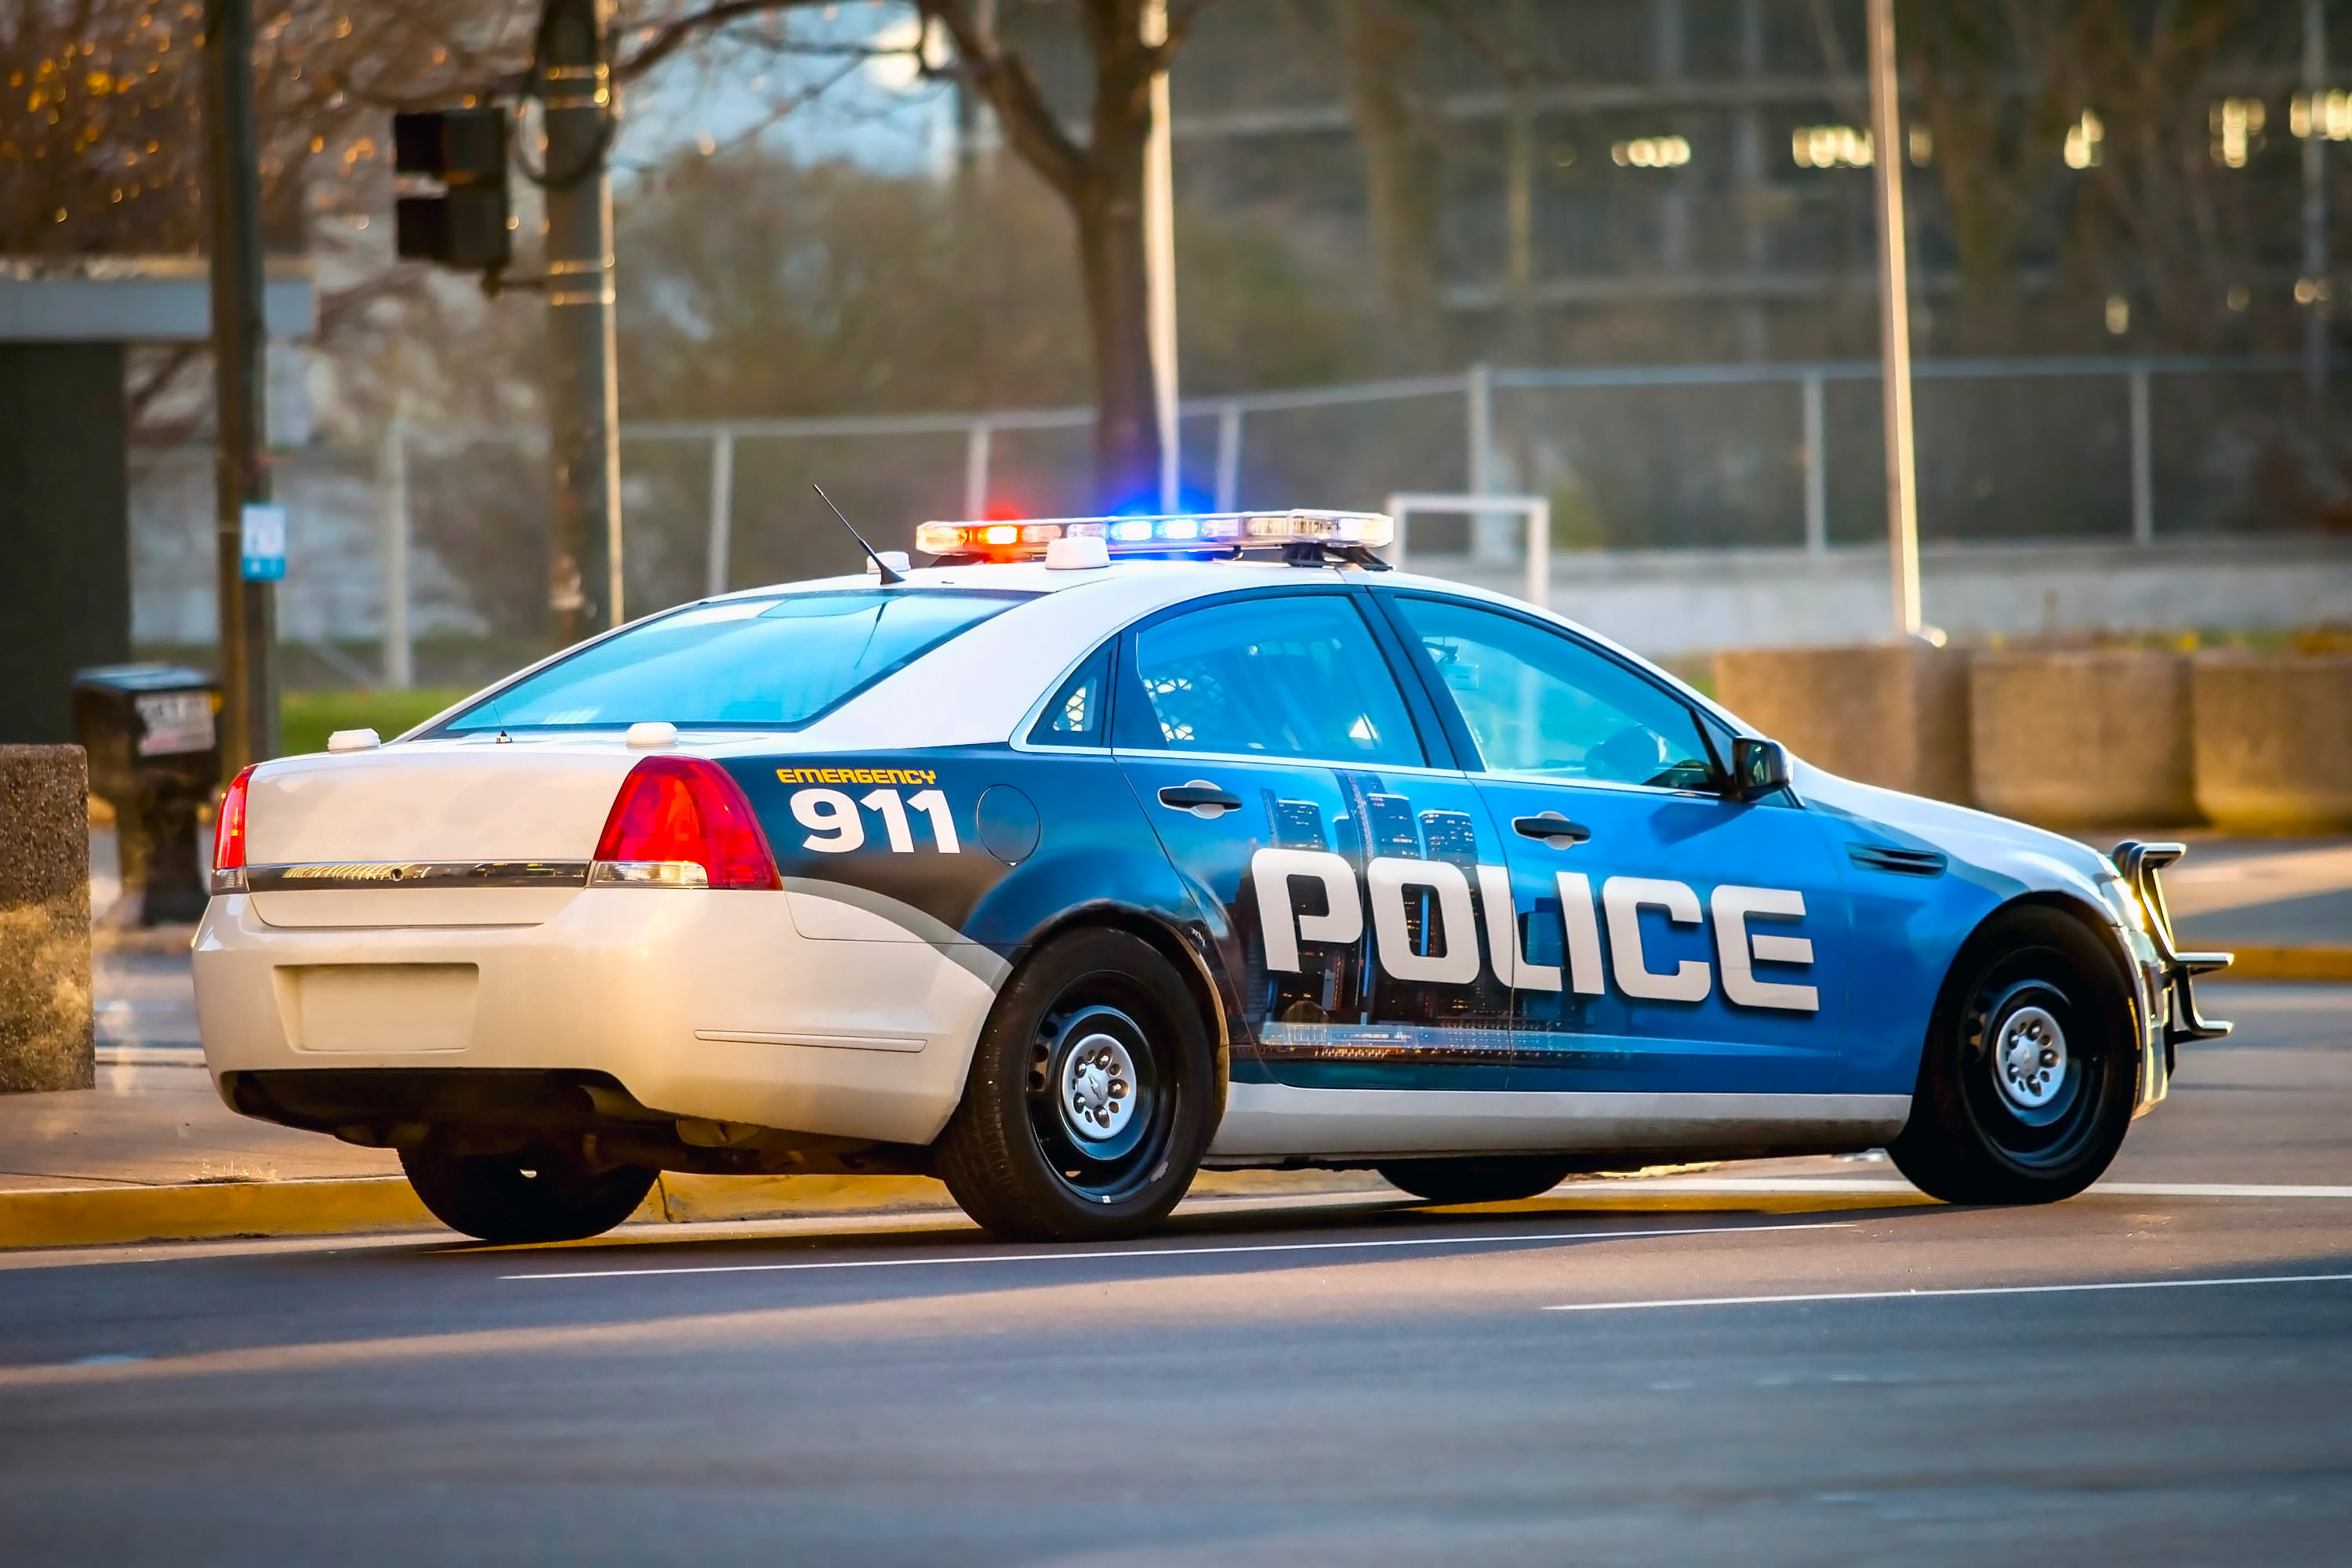 Ein Polizeiauto auf der Straße | Quelle: Shutterstock